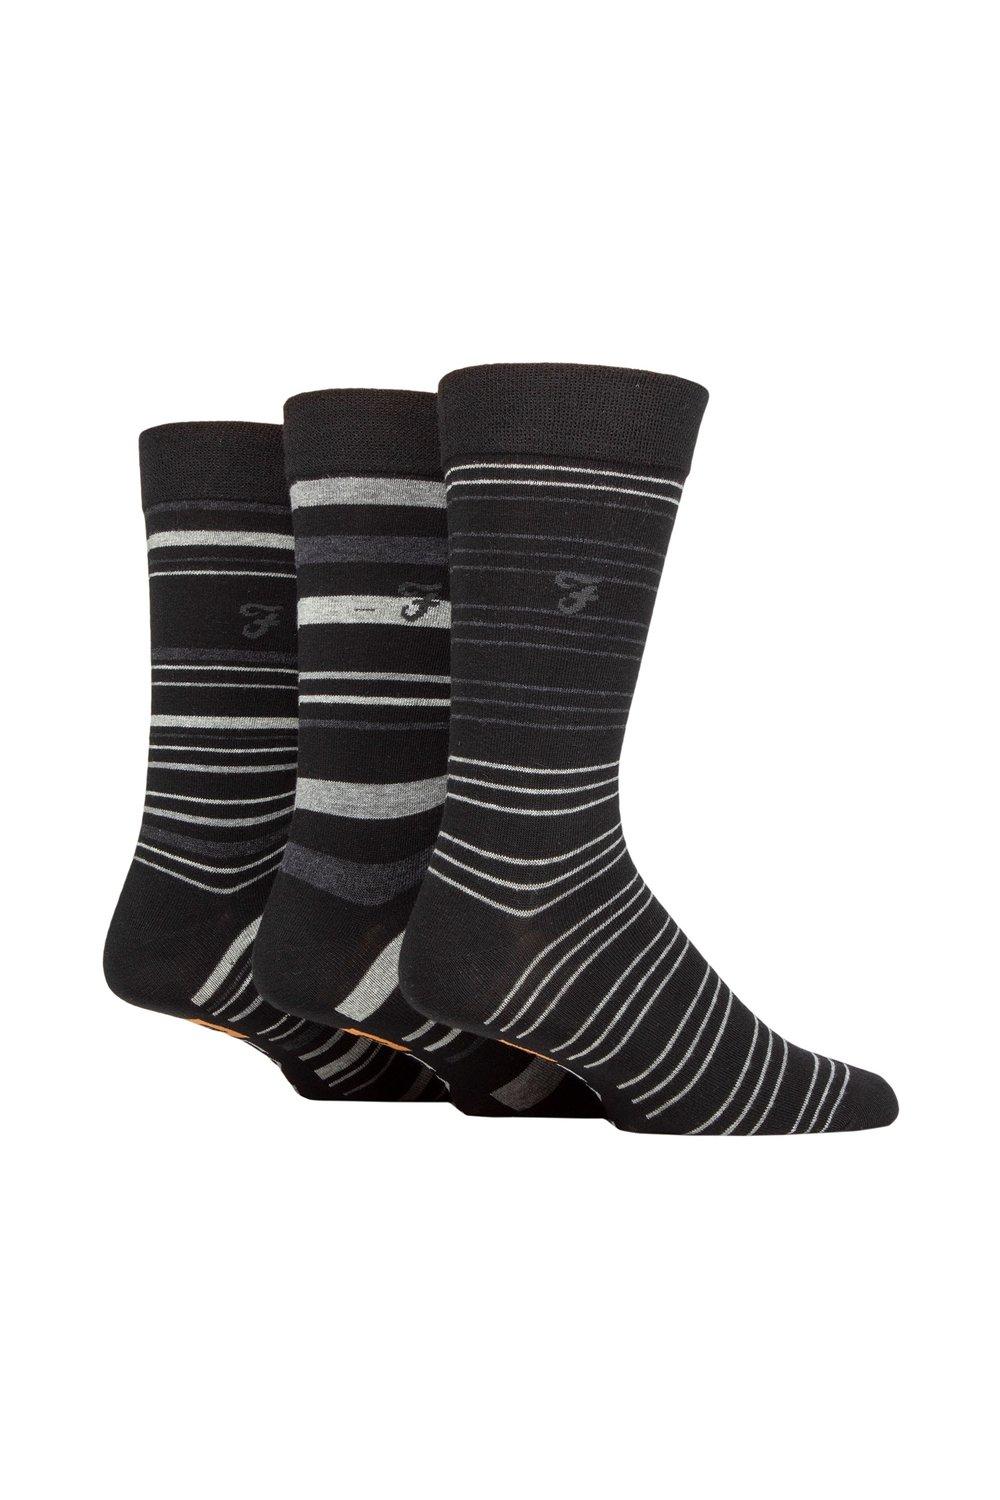 Мужские 3 пары хлопковых носков Farah Argyle с рисунком и полосками, мультиколор подарочный набор мужских носков argyle 3 шт marvel мультиколор